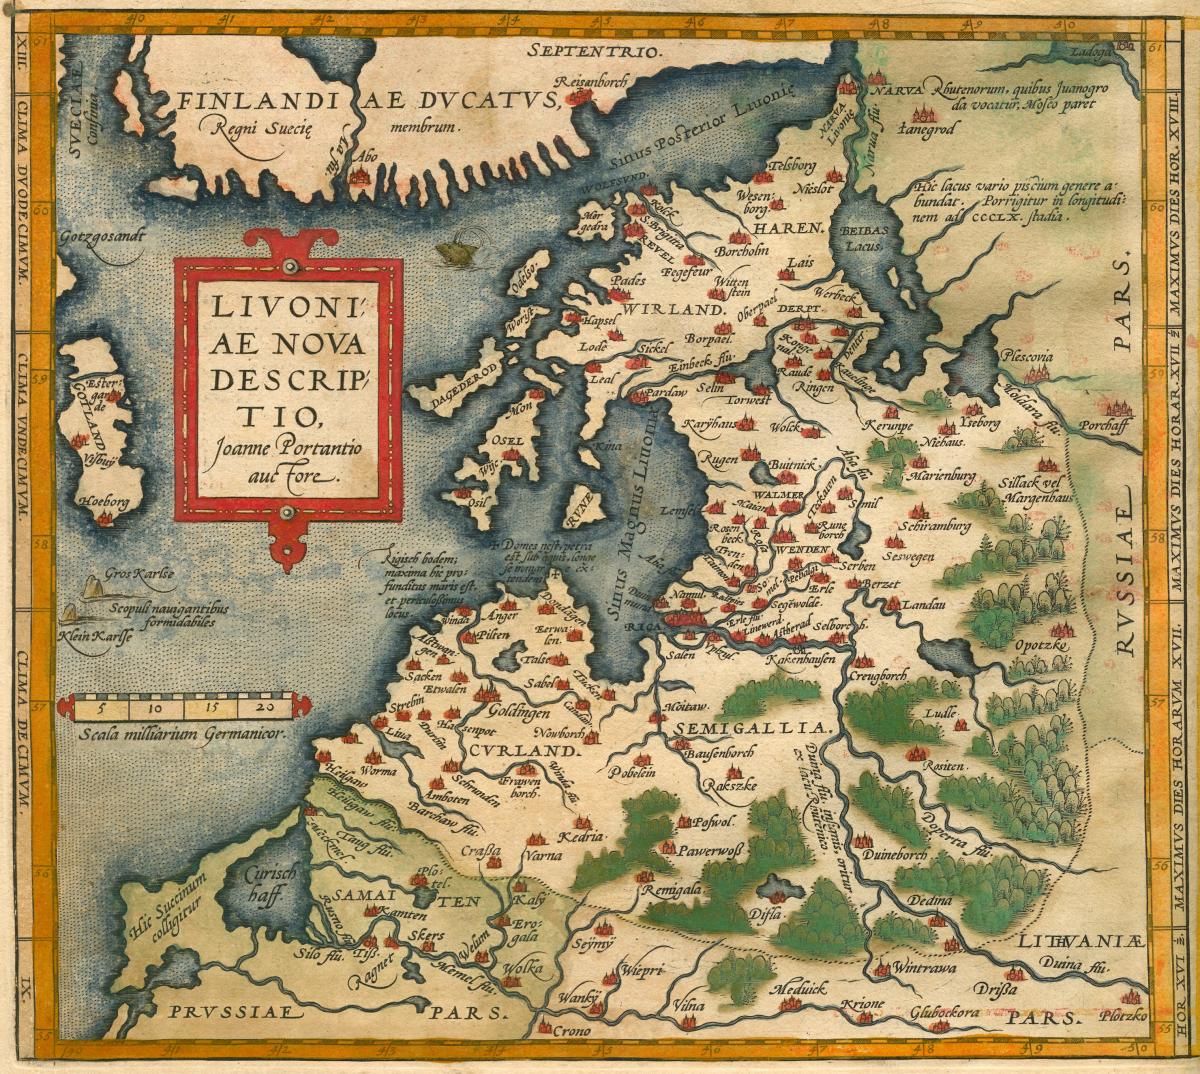 Vanha kartta Itämeren eteläosista. Siinä näkyy monia Baltian kaupunkeja, Suomesta vain Turku ja Raasepori.